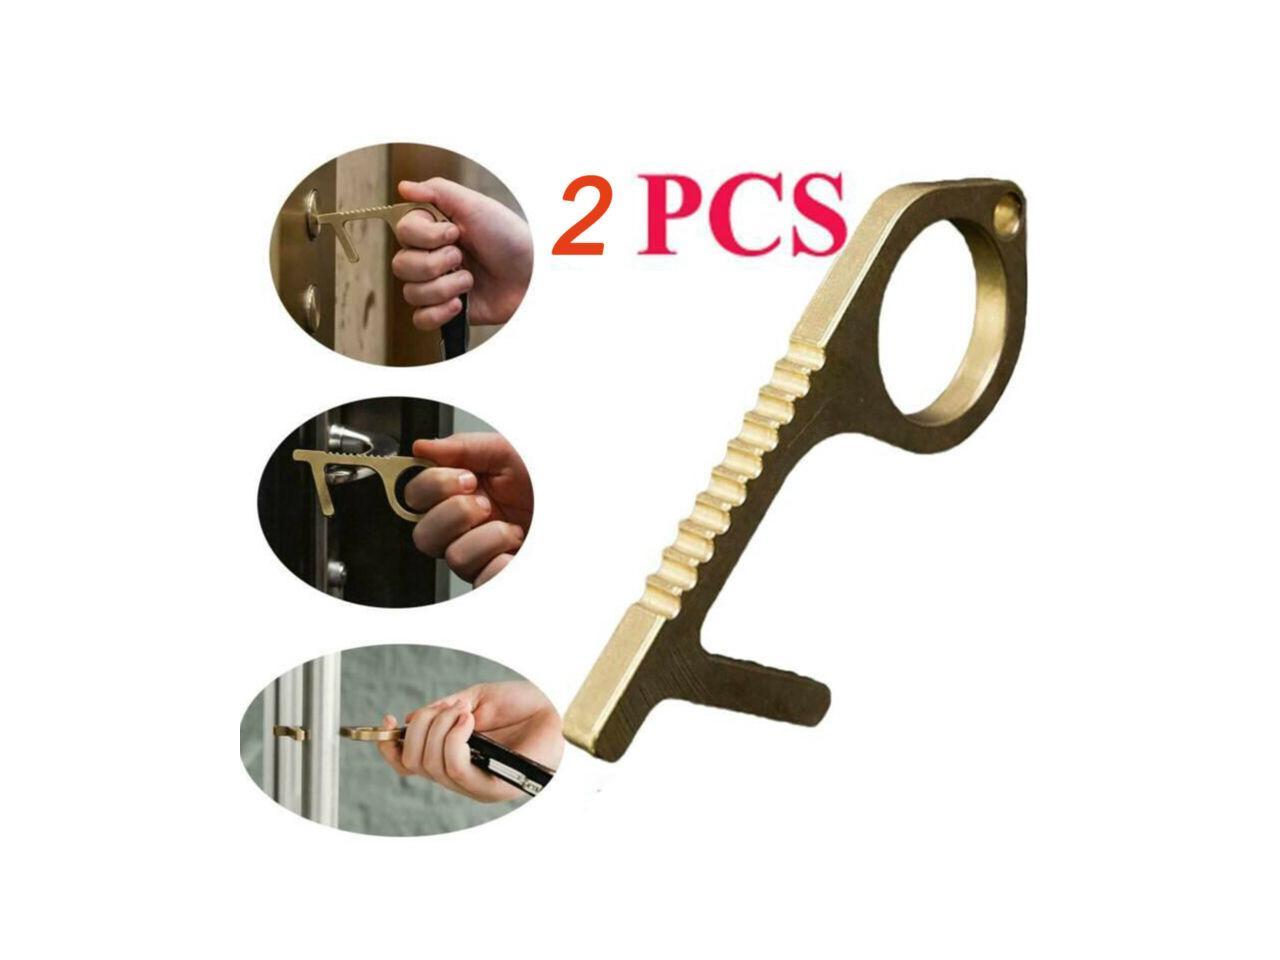 3 PCS Contactless Door Opener,Simple Hygiene Hand Brass Door Opener & Stylus Environmental Protection Elevator Prevention Open Door For Work 